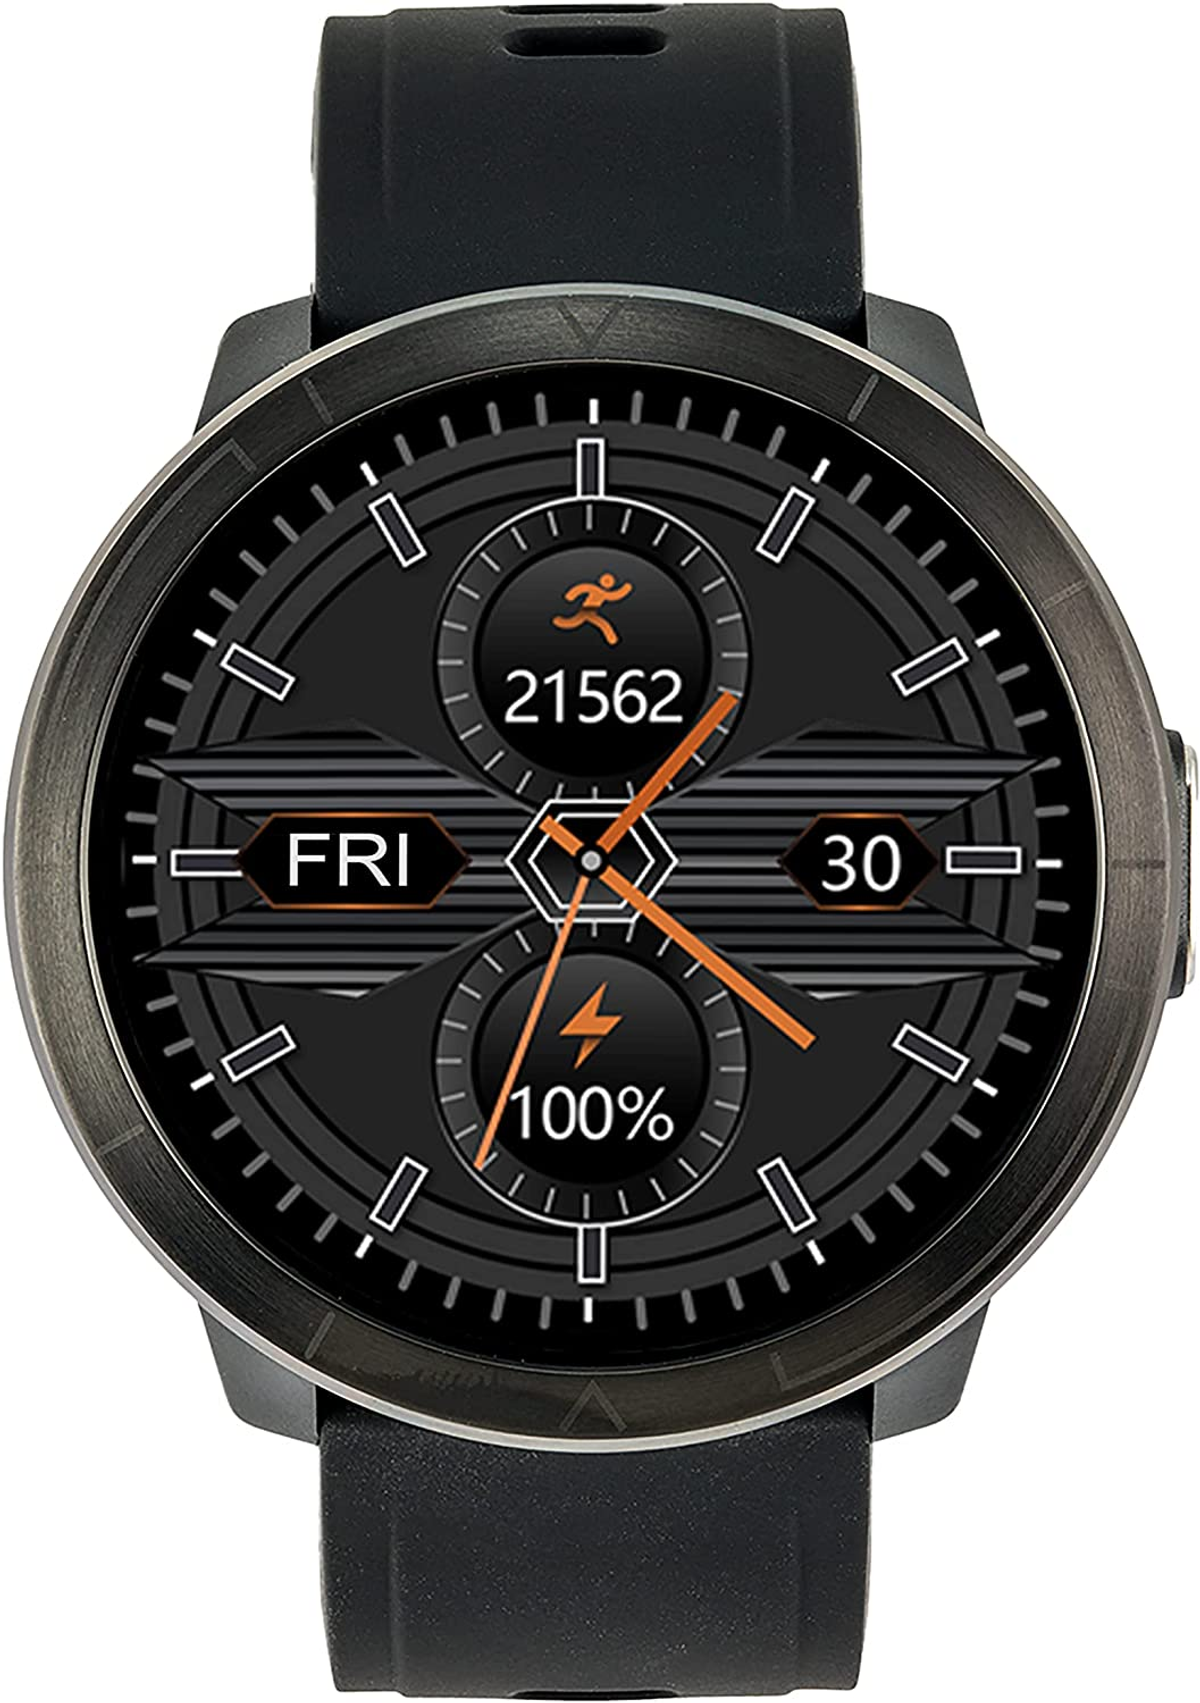 WATCHMARK WM18 schwarz Kunststoff Schwarz Smartwatch Silizium